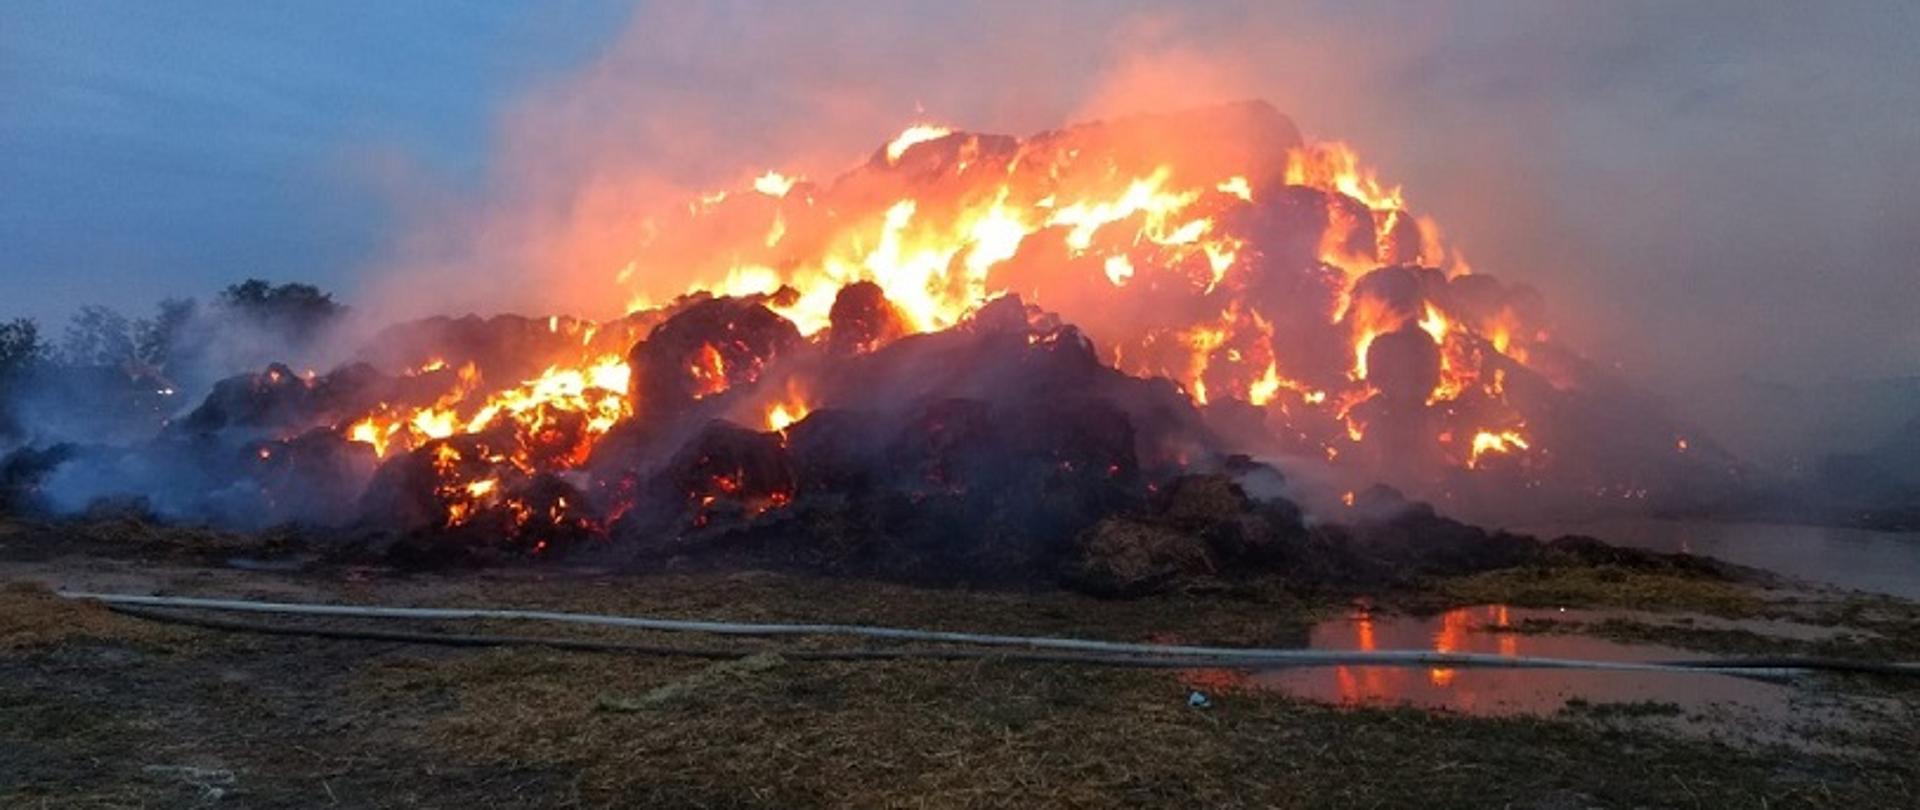 Zdjęcie przedstawia pożar sterty słomy